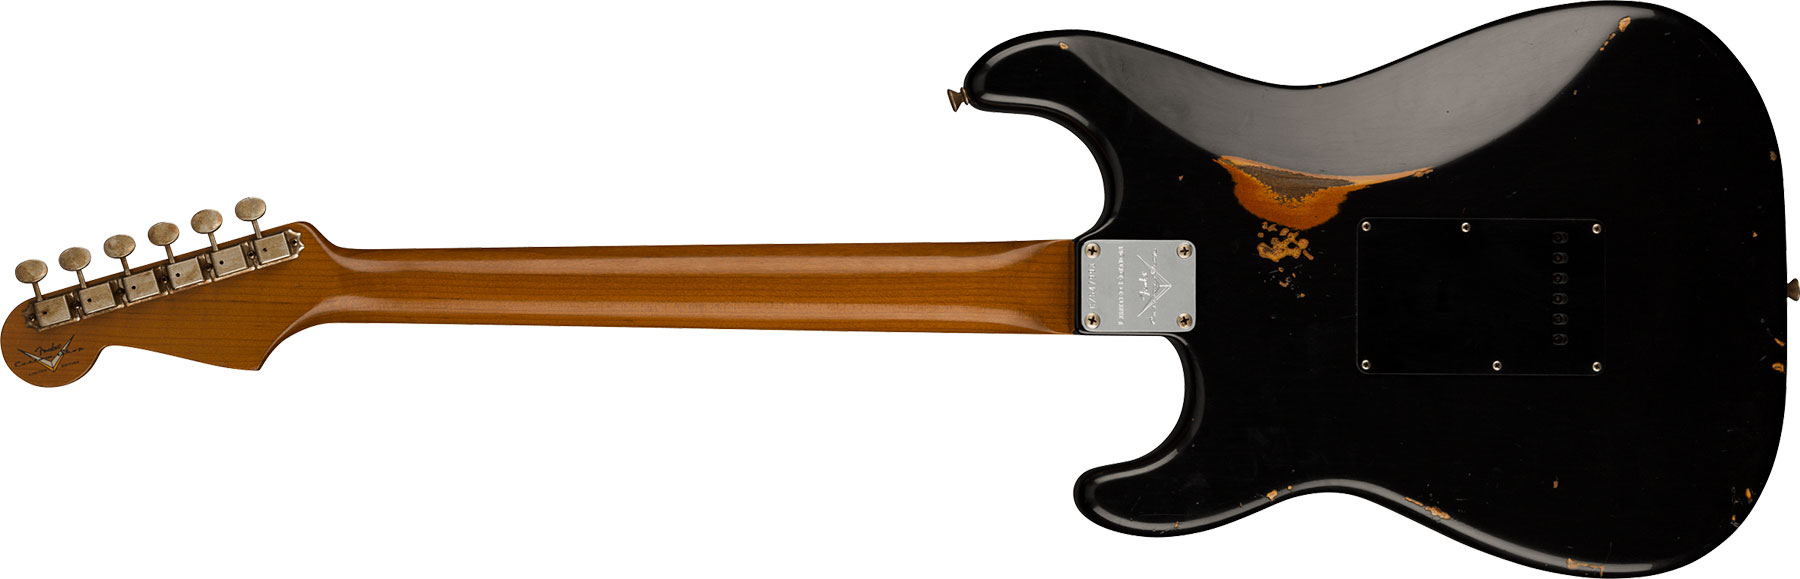 Fender Custom Shop Strat Dual Mag Ii Ltd Usa 3s Trem Rw - Relic Black Over 3-color Sunburst - Str shape electric guitar - Variation 1